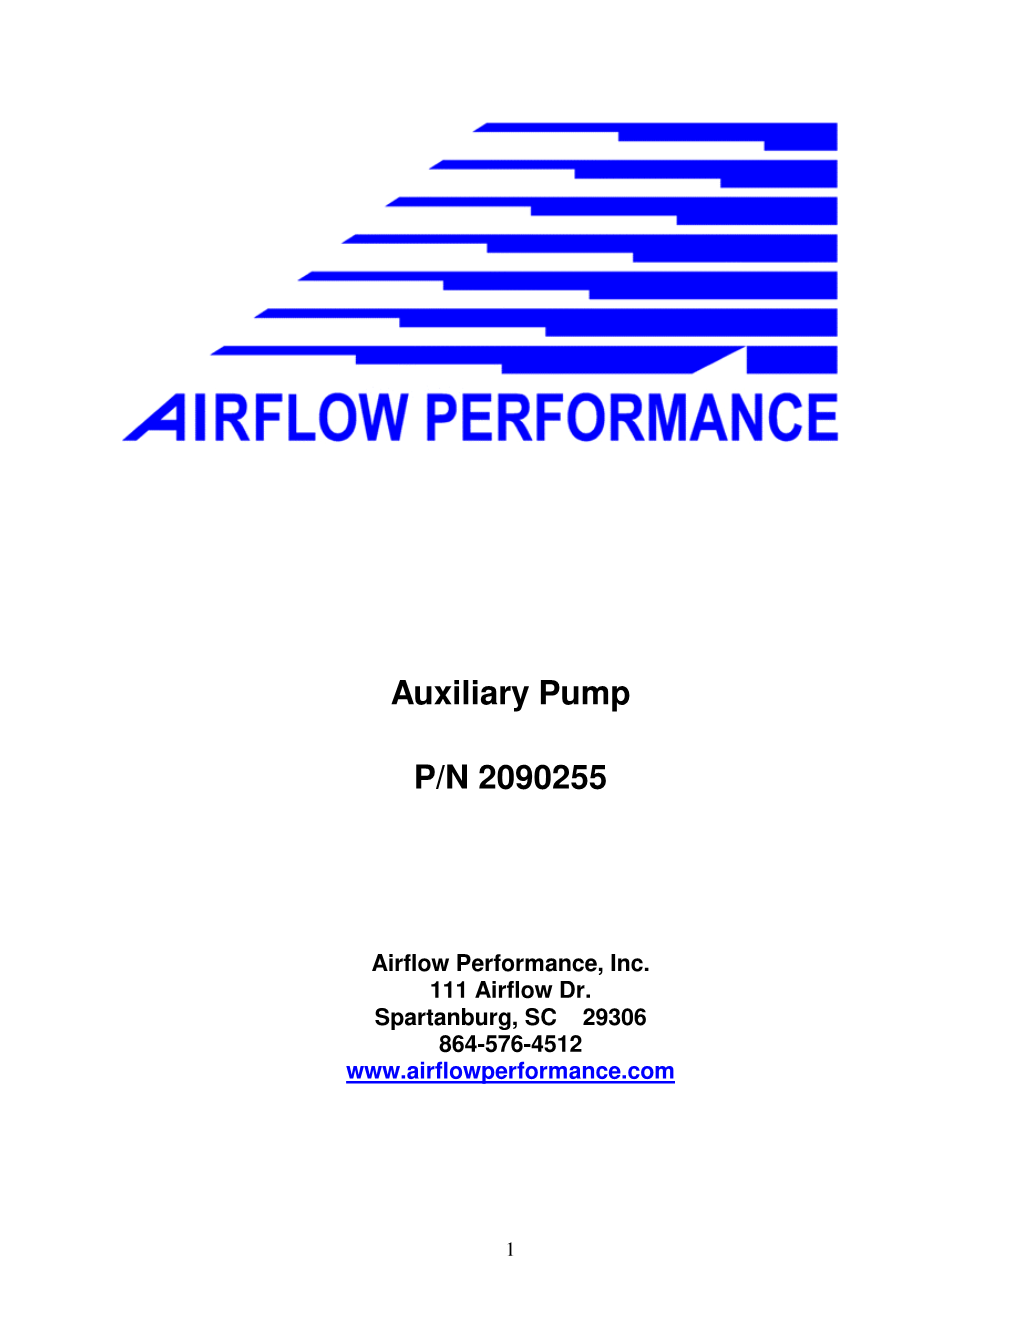 Auxiliary Pump P/N 2090255